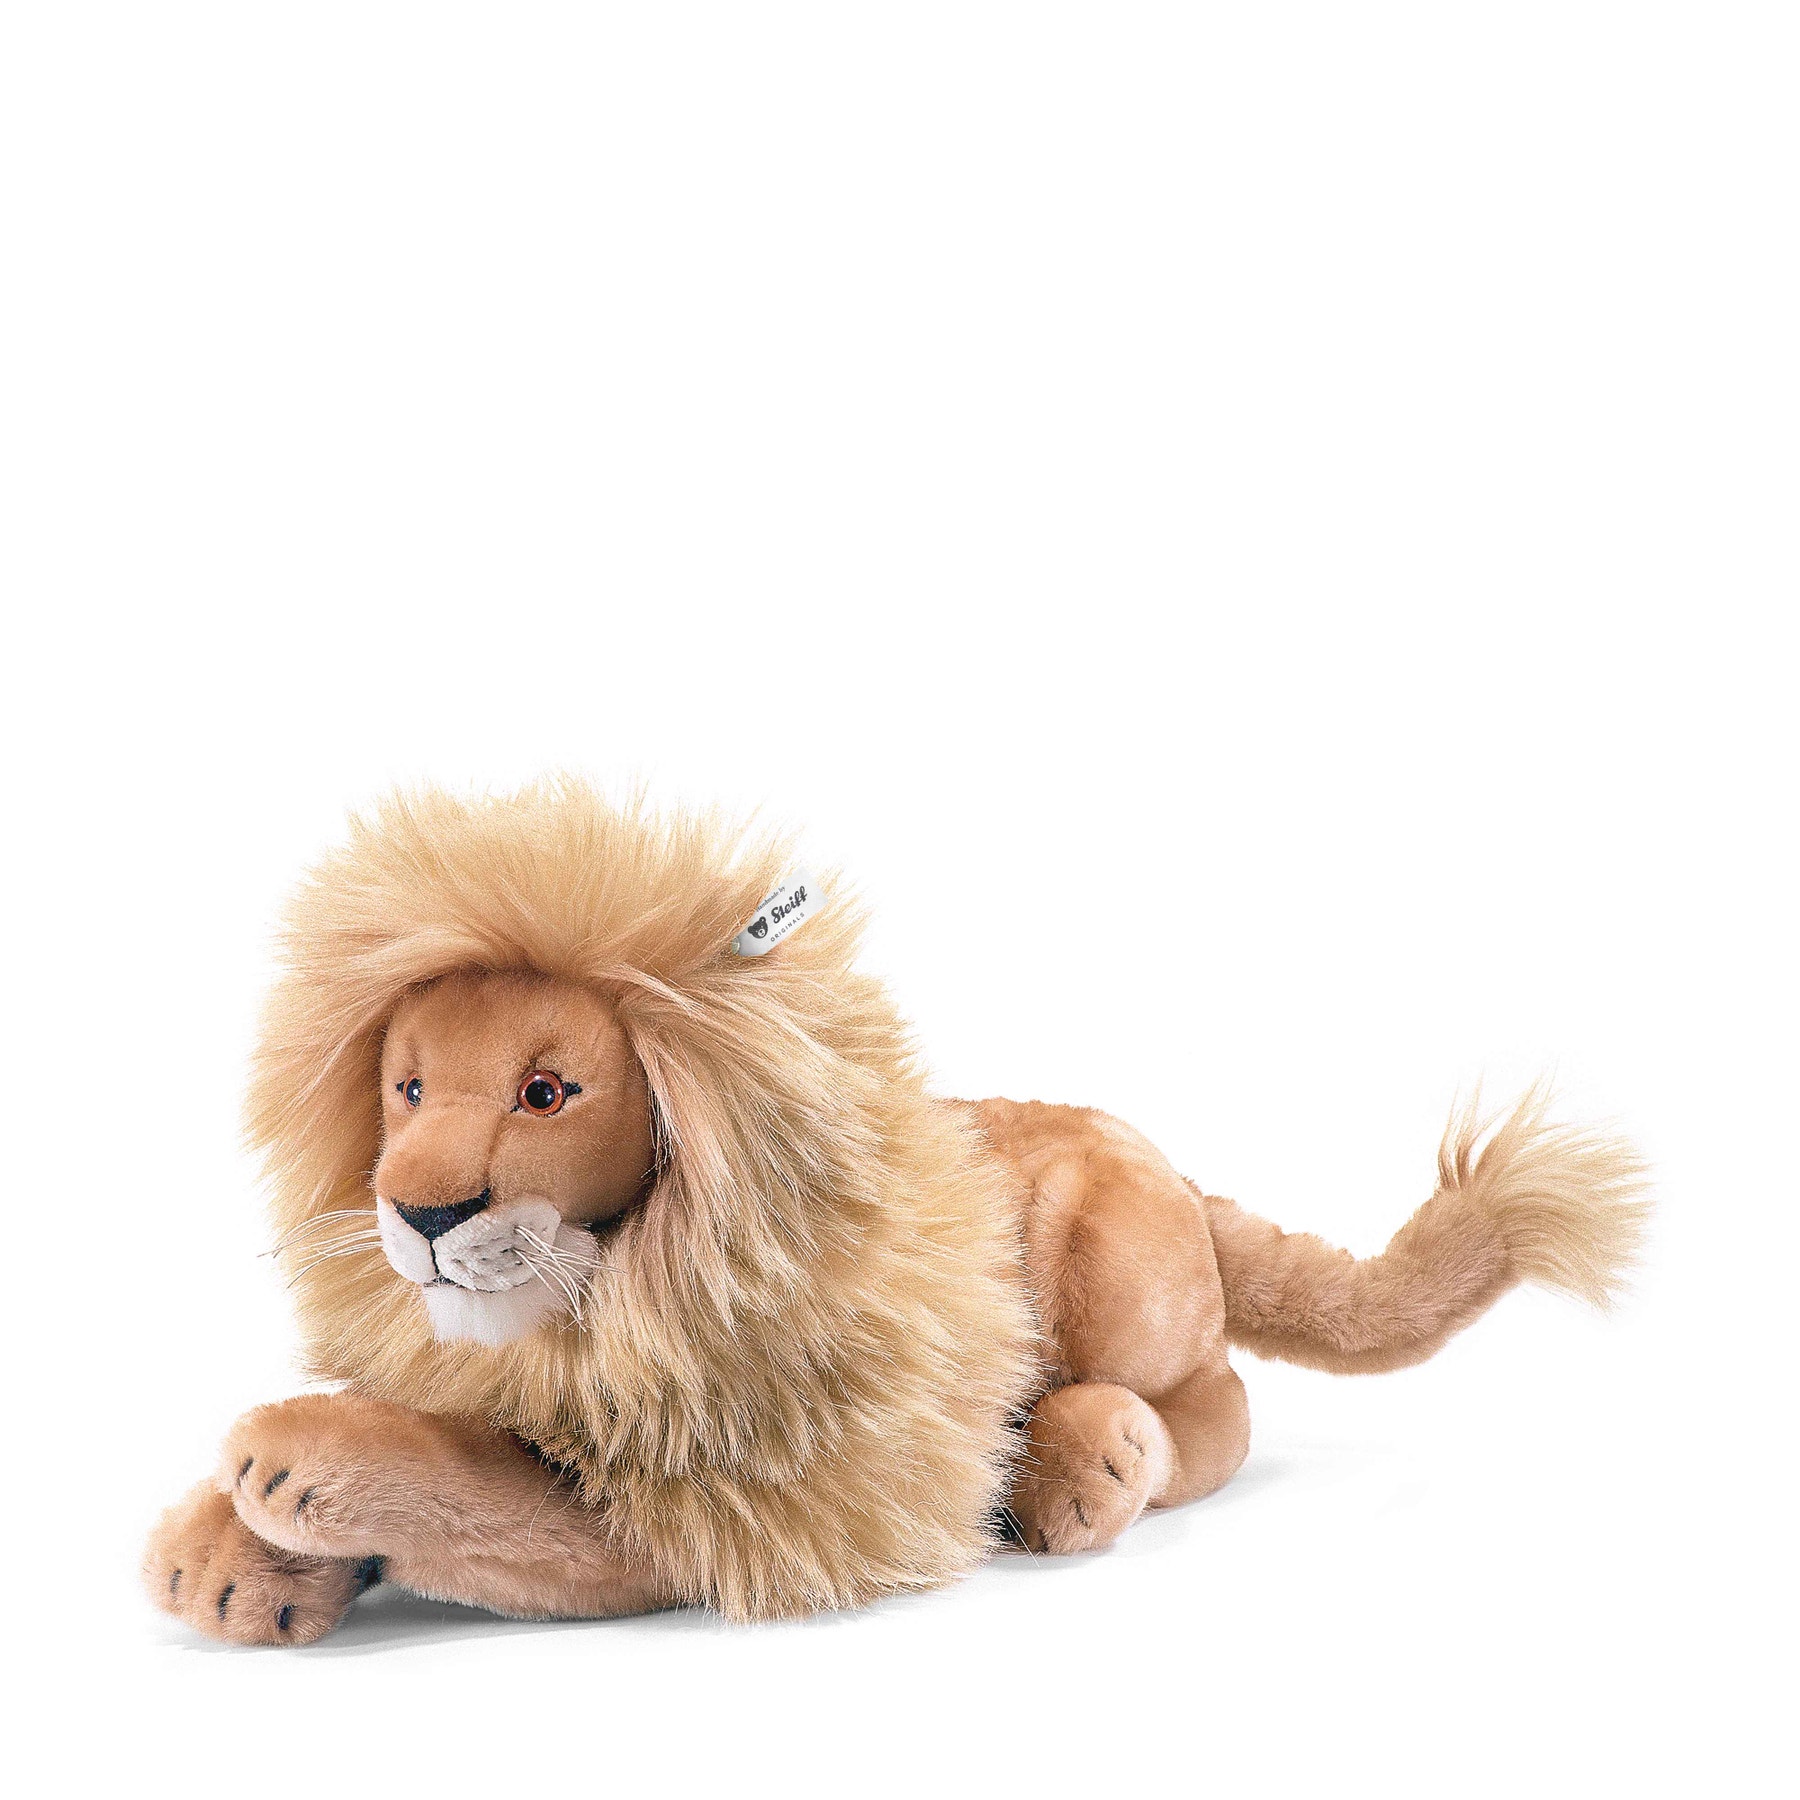 Leo Lion